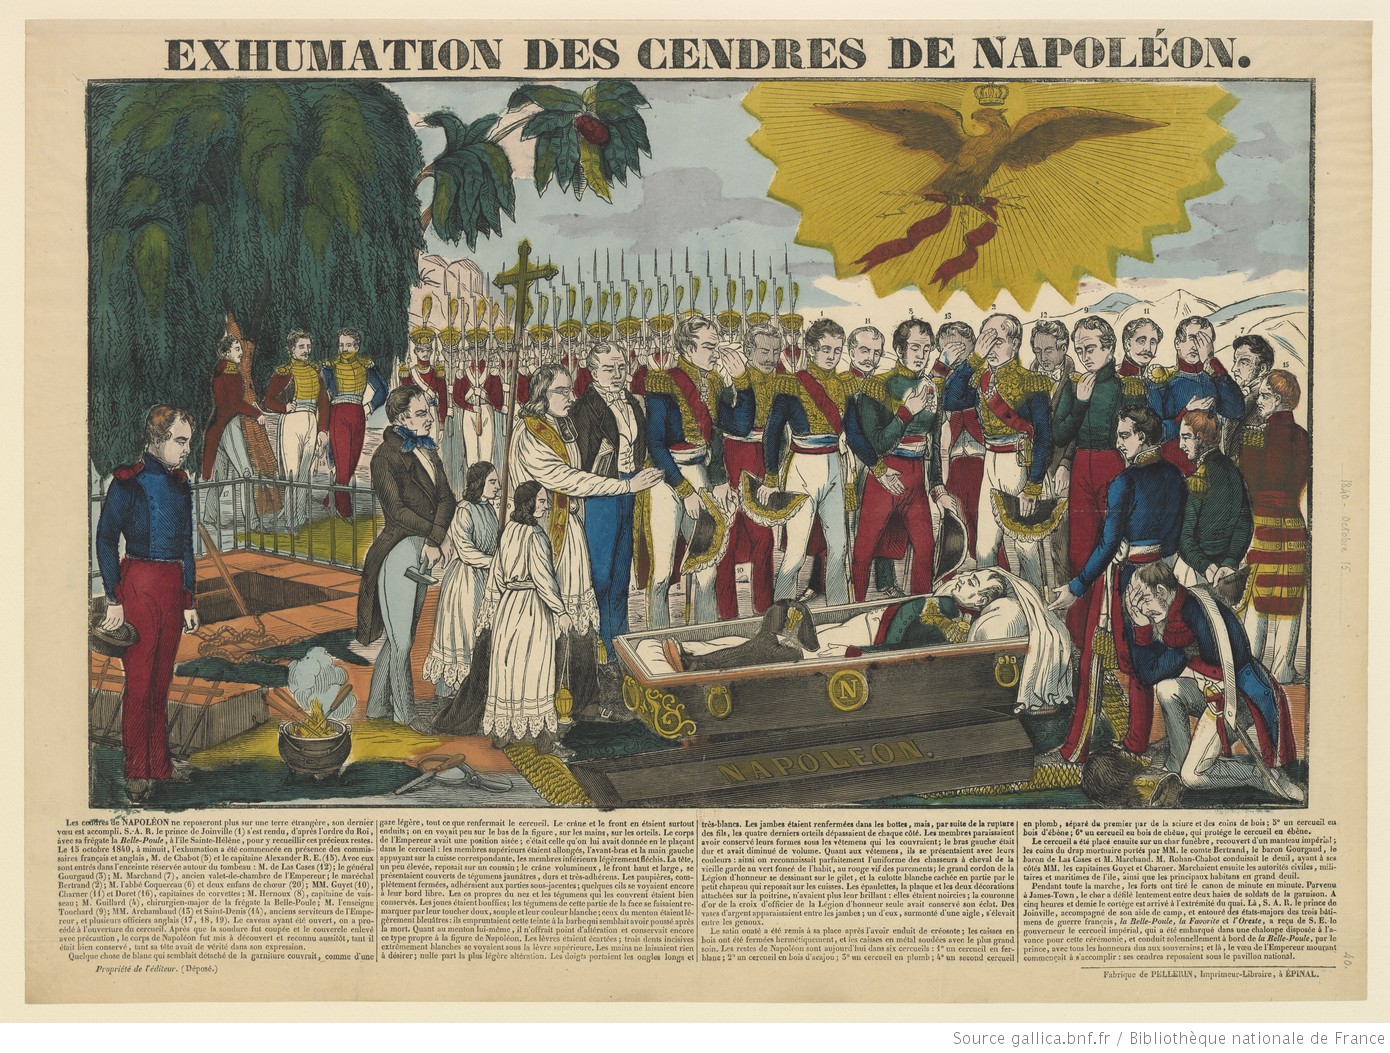 12 MAI 1840 : PROJET DE LOI POUR RAPATRIER LES CENDRES DE L'EMPEREUR